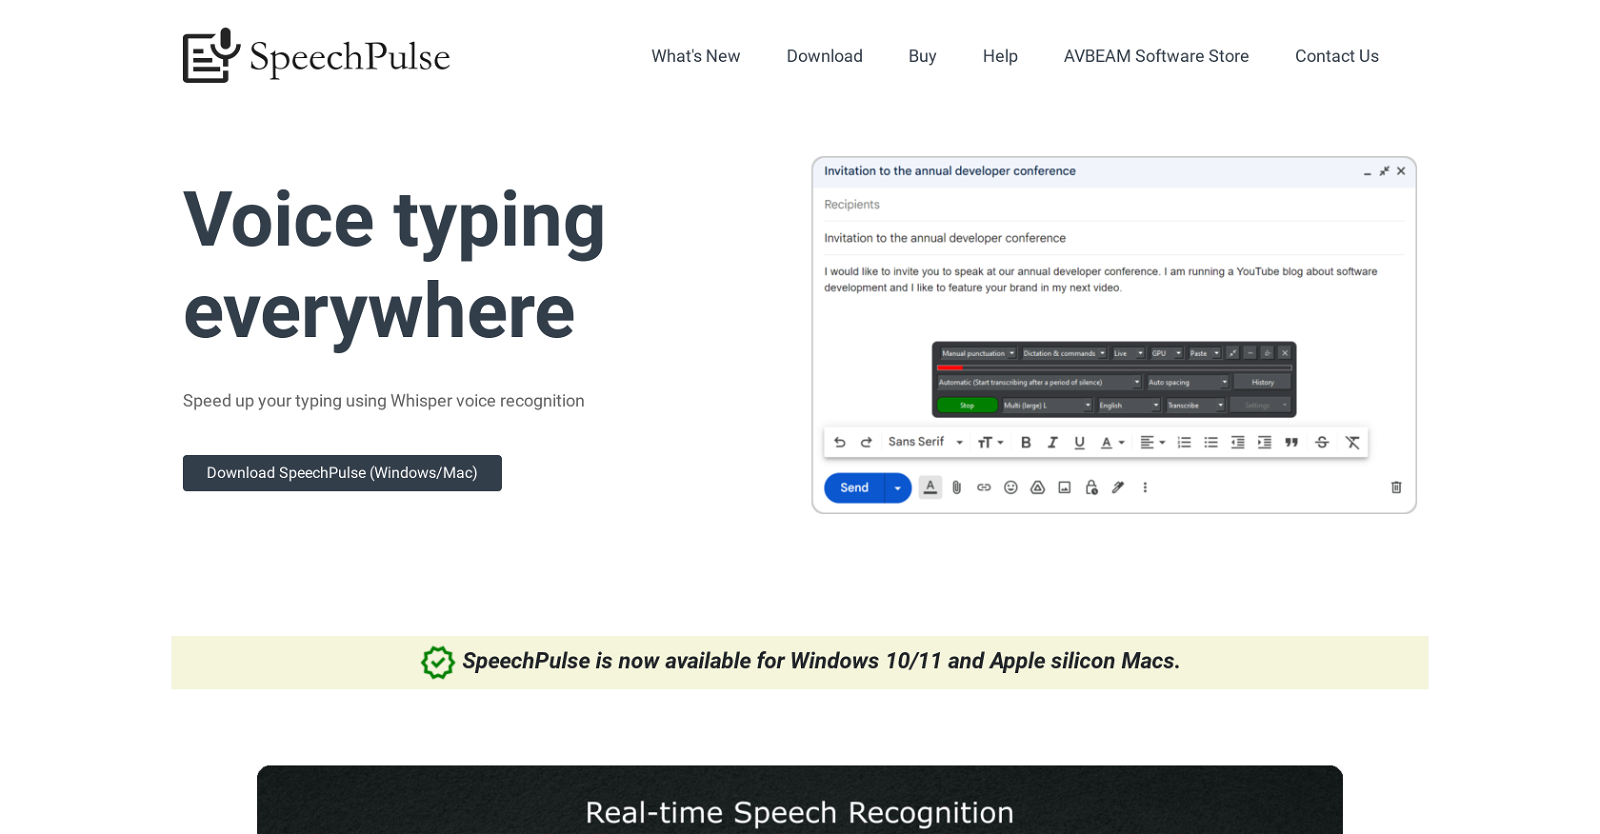 SpeechPulse website